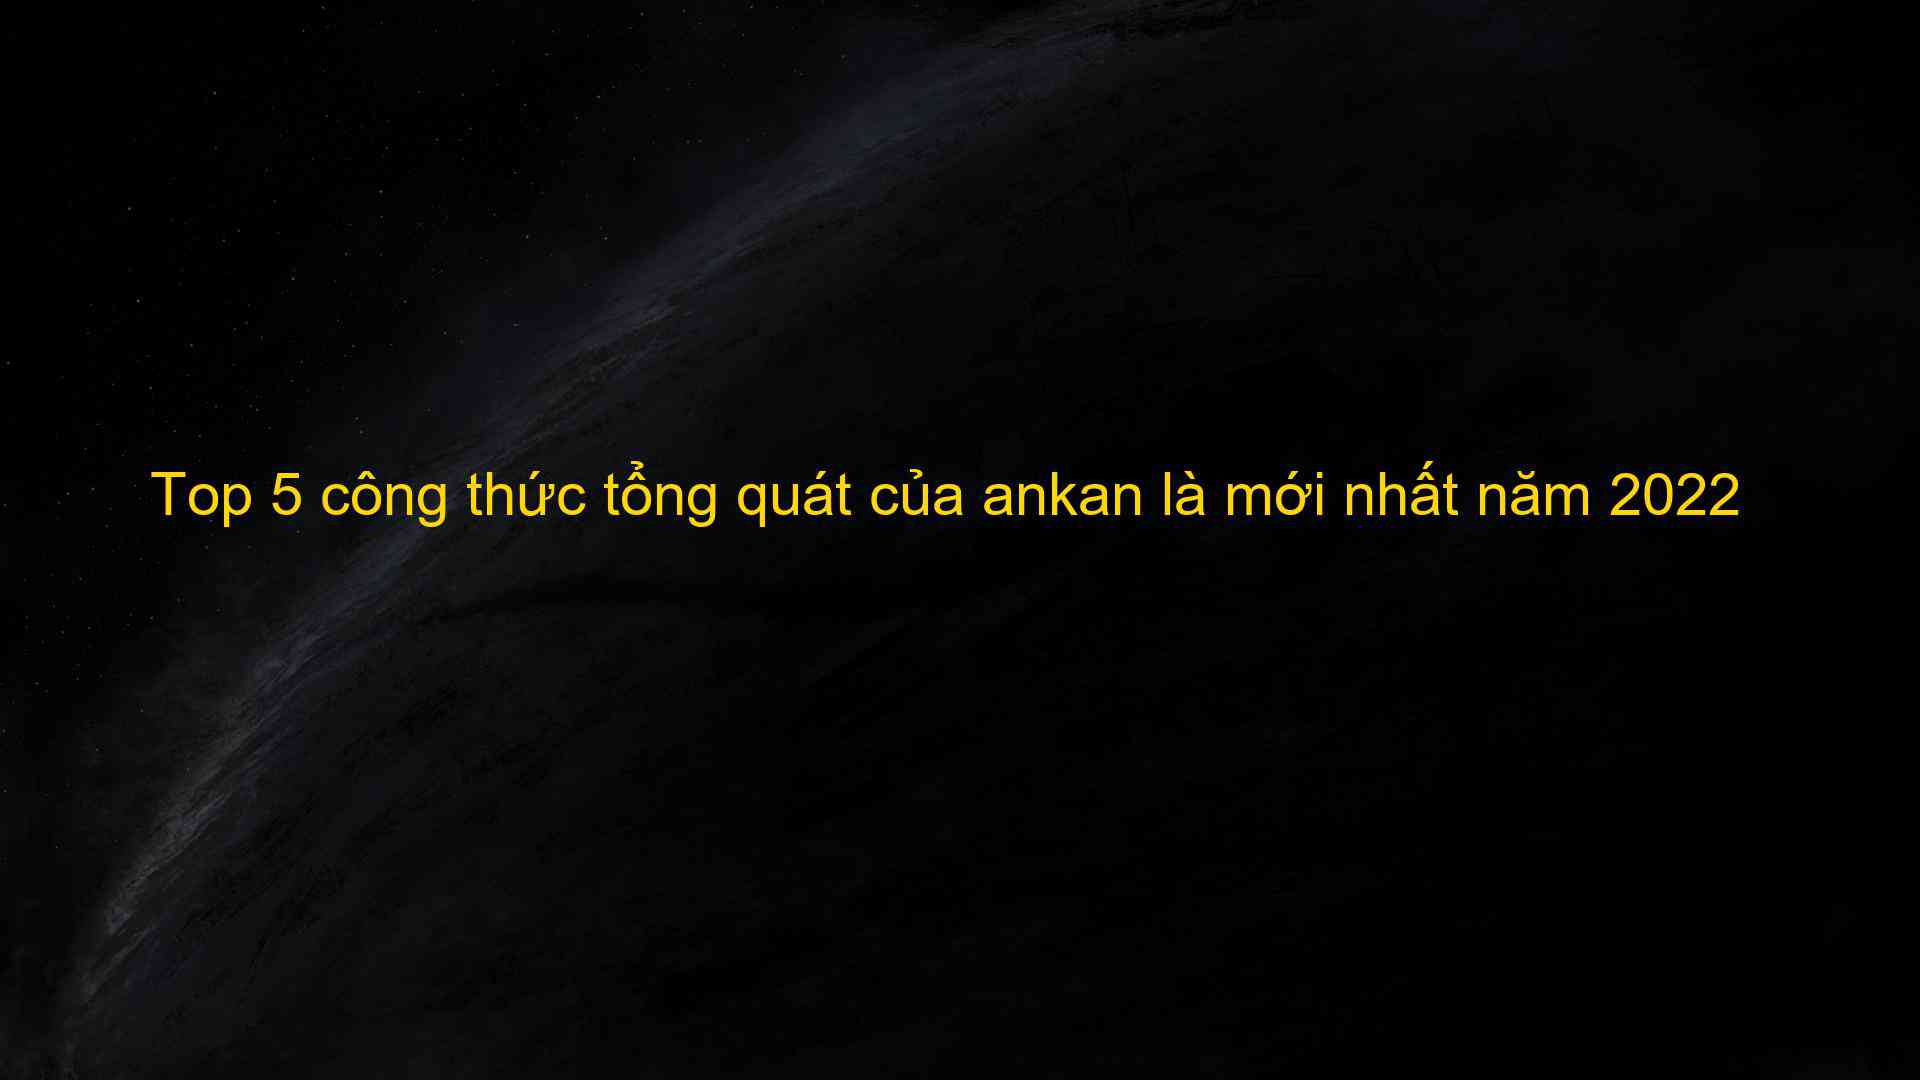 Top 5 cong thuc tong quat cua ankan la moi nhat nam 2022 1659788402